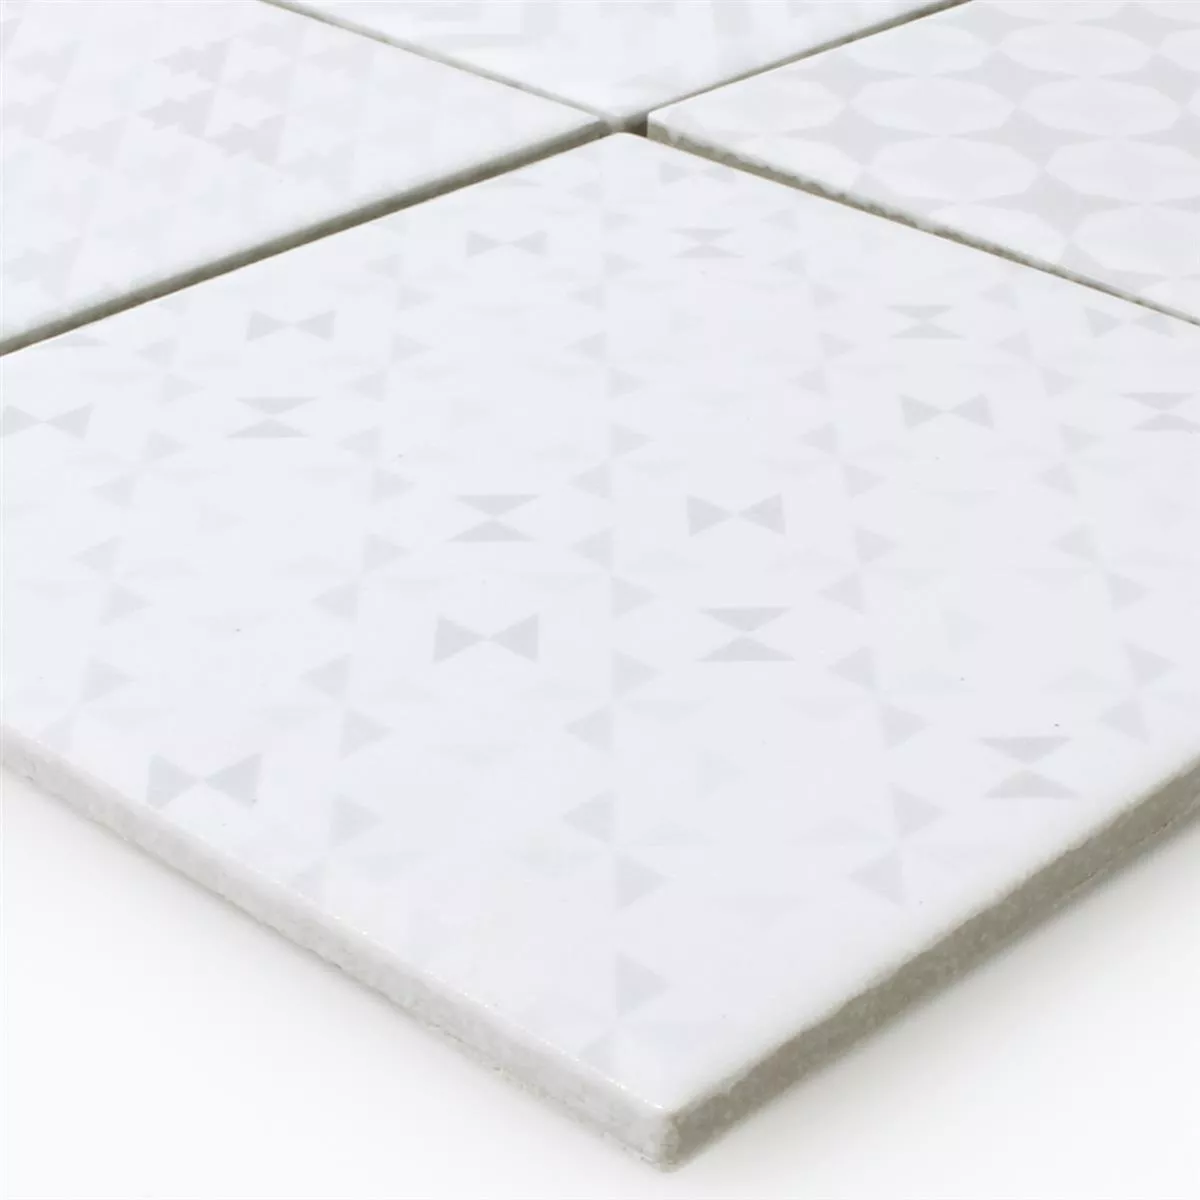 Mosaic Tiles Ceramic Cement Optic Geo White